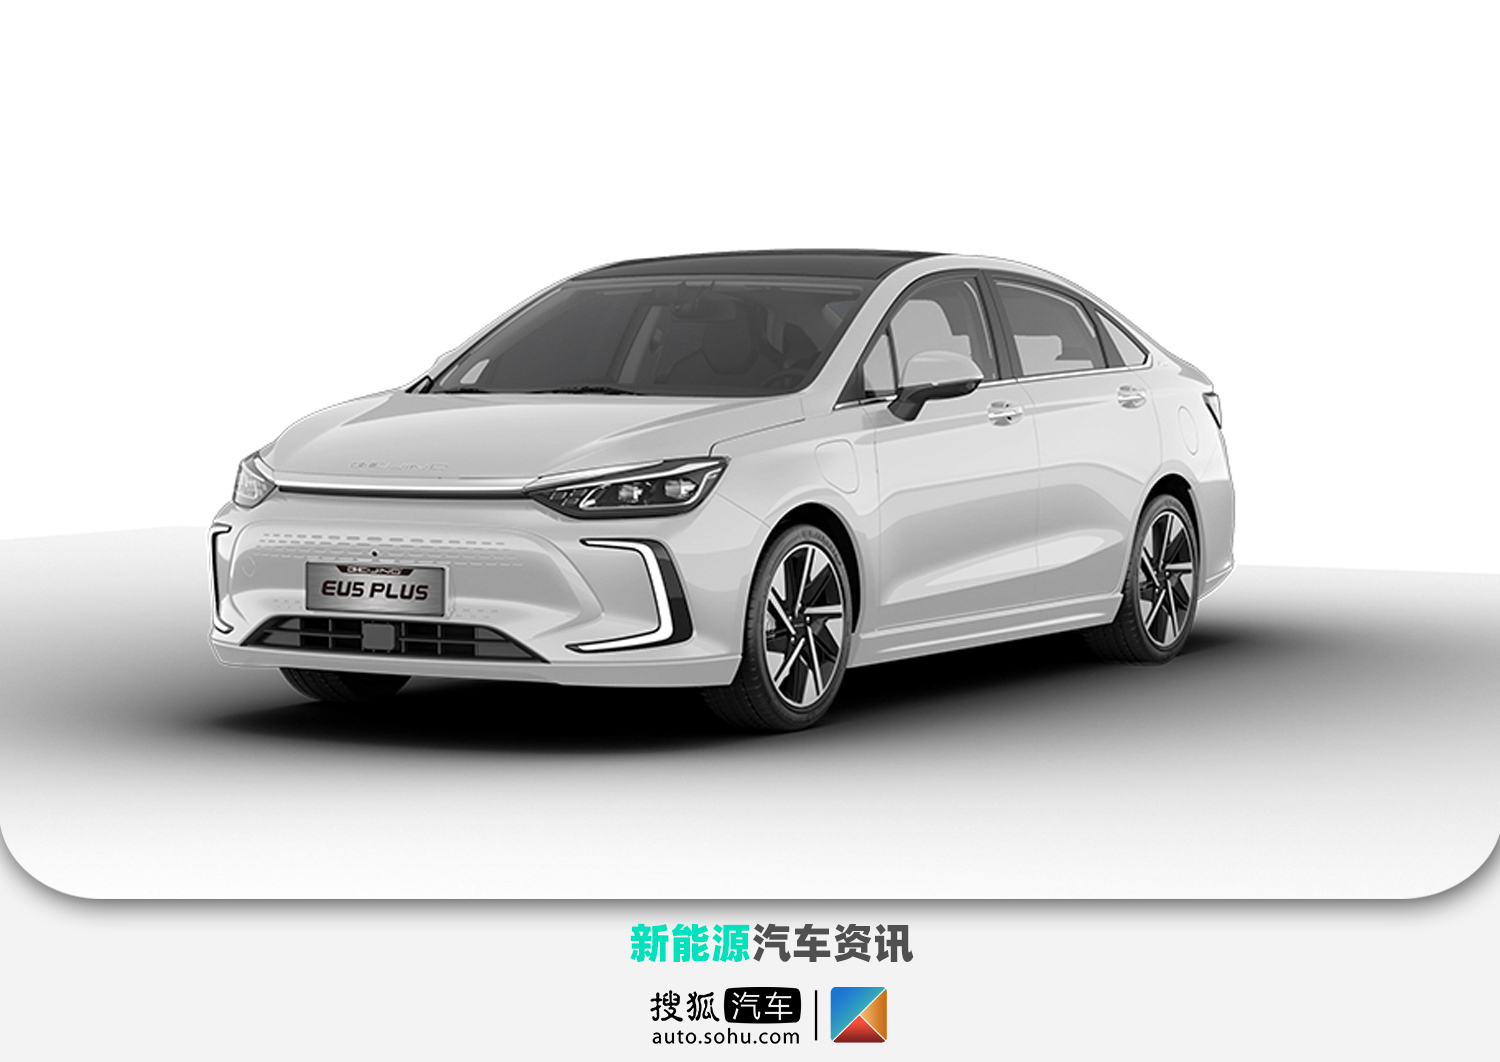 采用最新设计语言 beijing汽车eu5 plus将于上海车展首发